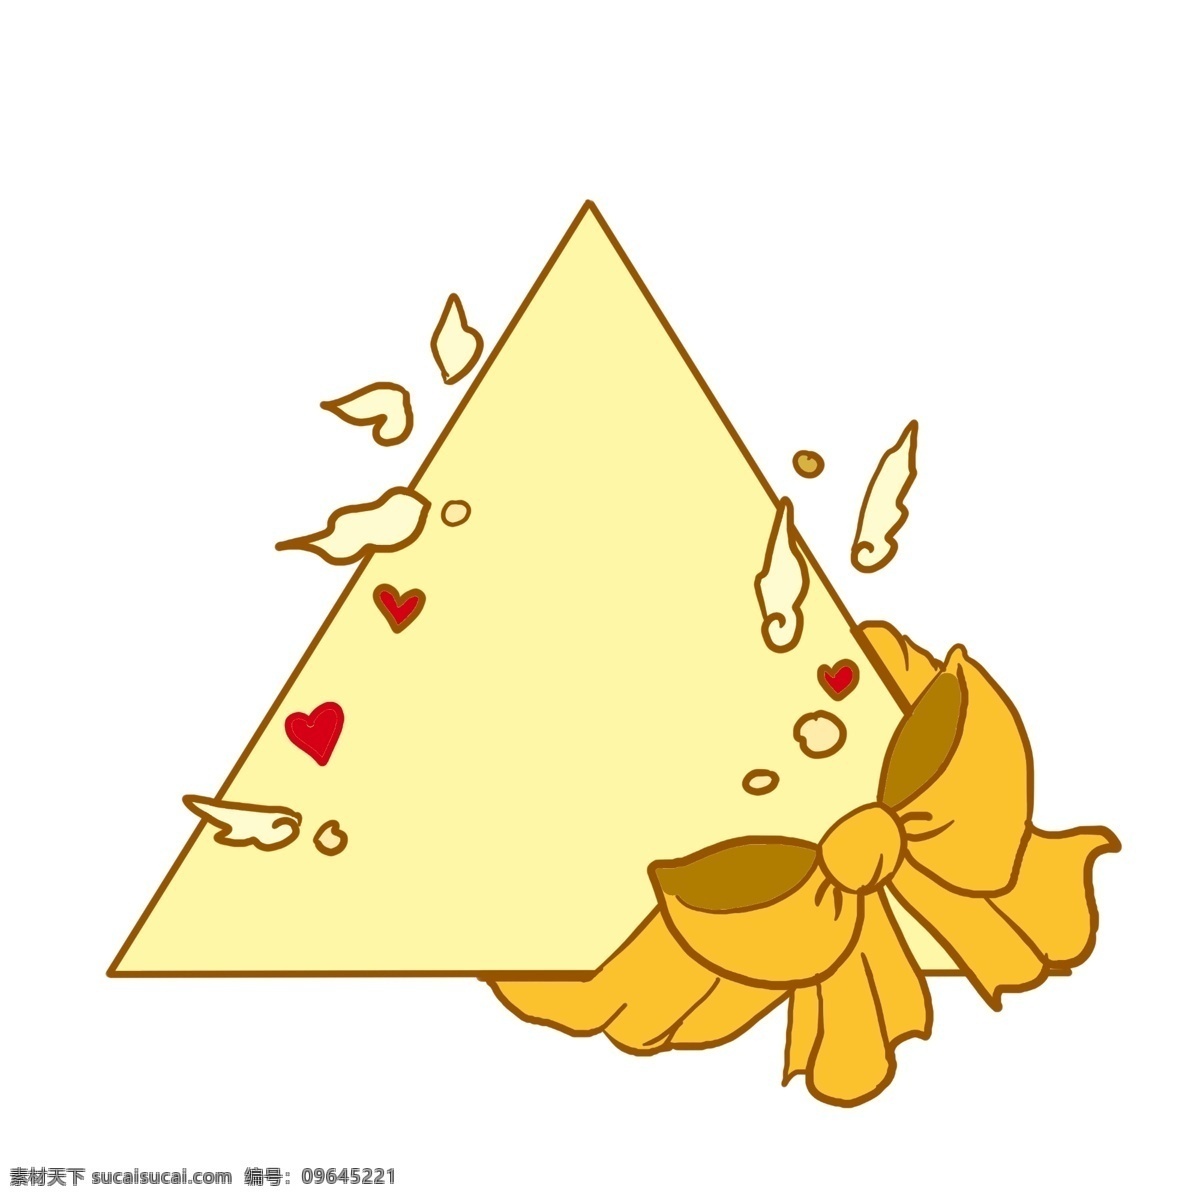 卡通 三角形 边框 插画 黄色的蝴蝶结 黄色的三角形 心形装饰 蝴蝶结装饰 卡通三角形 装饰三角形 火形